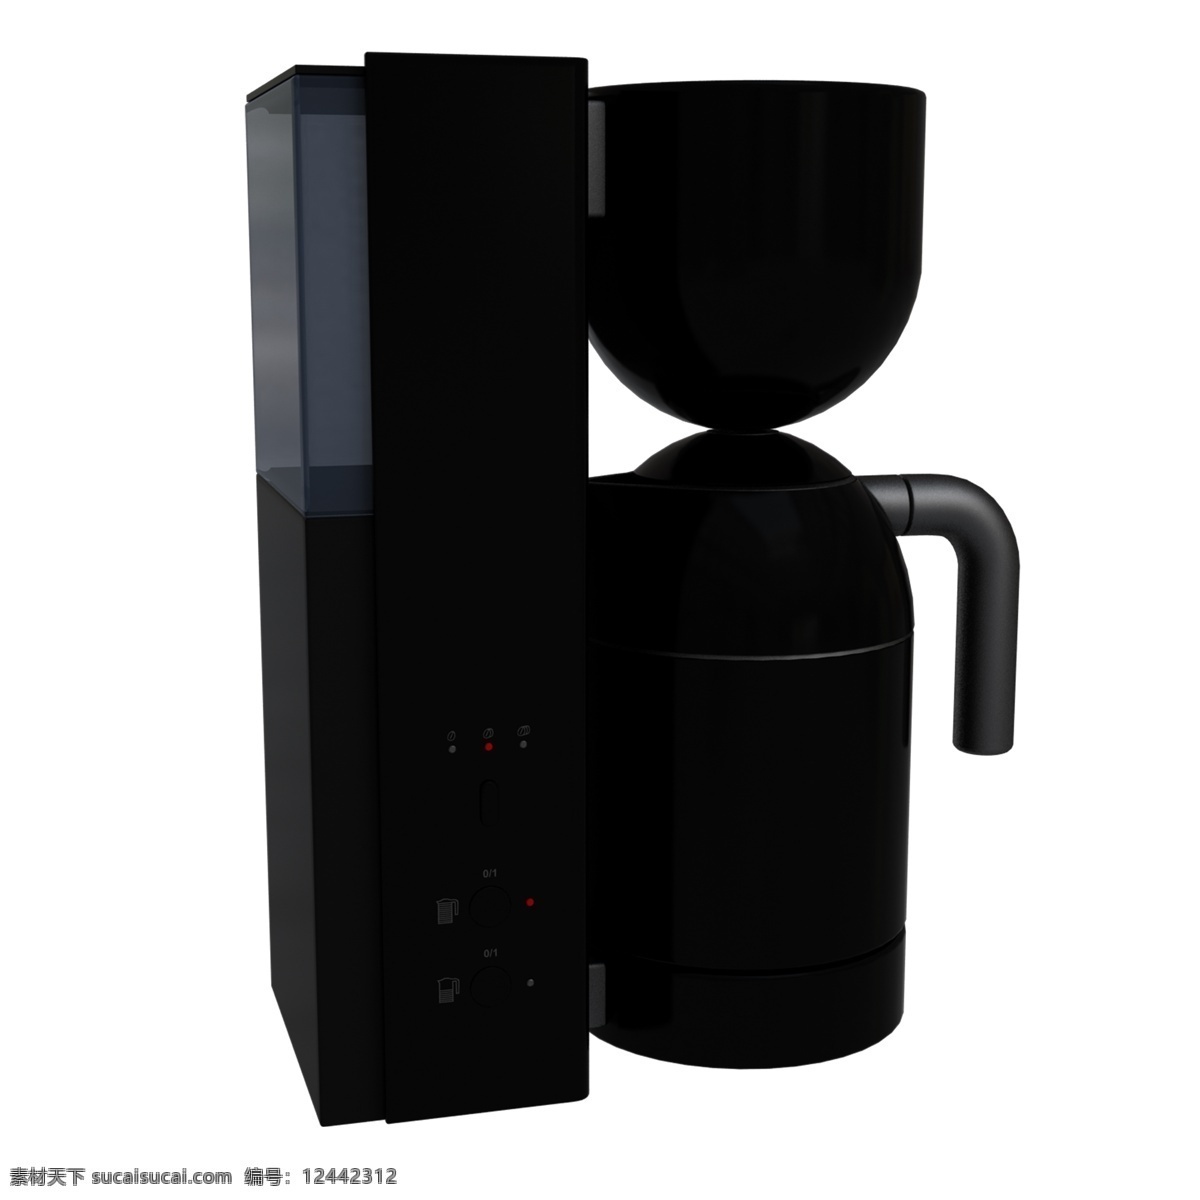 黑色 创意 饮水机 元素 科技 家电 喝的 机械 机器 塑料 光泽 把手 纹理 立体 喝水 液体